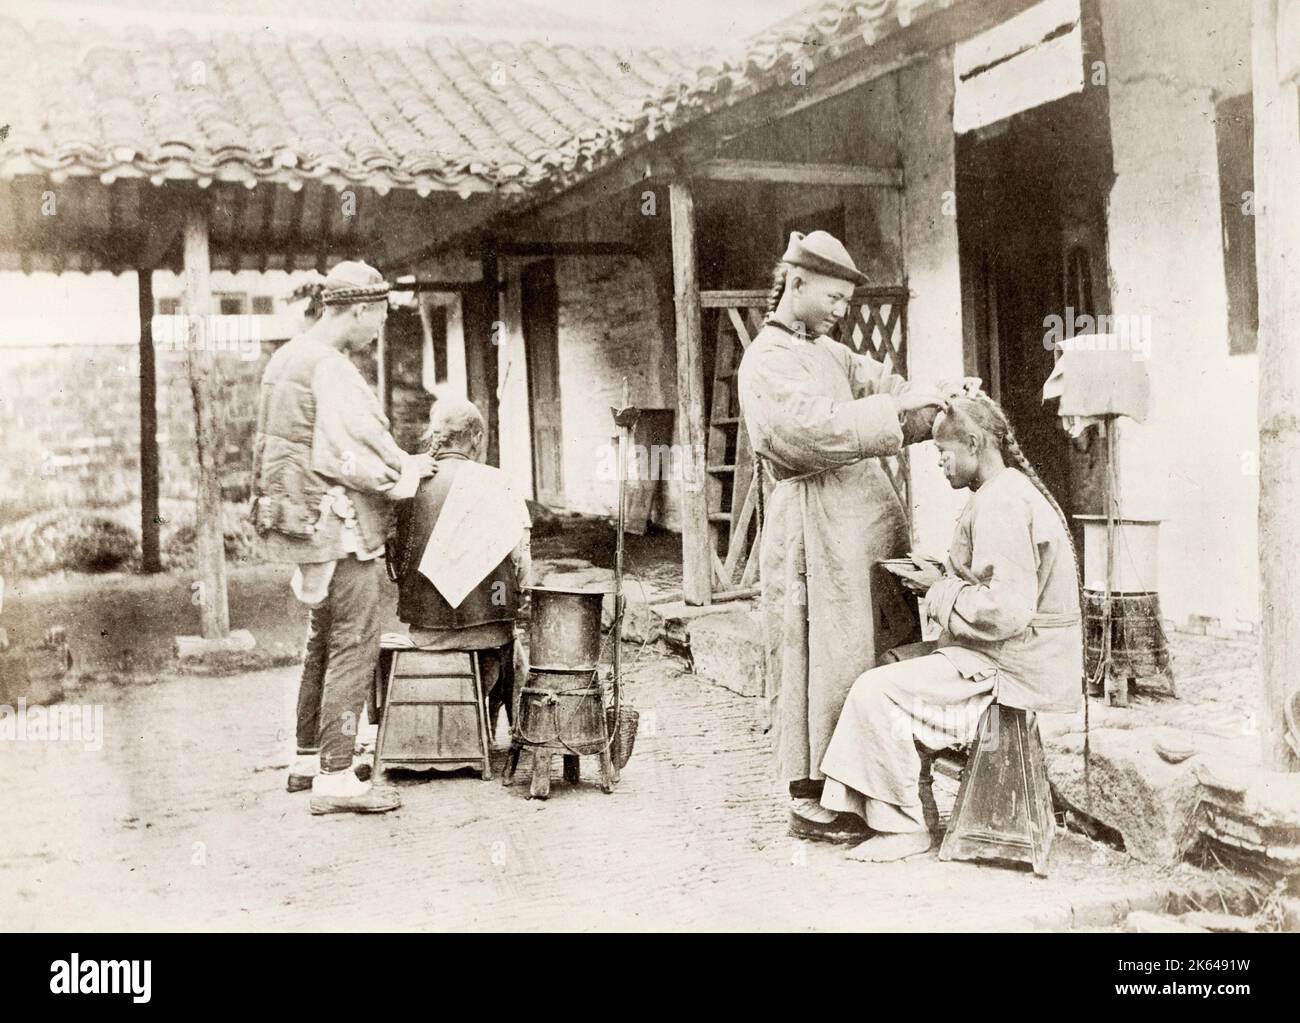 Vintage 19 ° secolo Fotografia: Cina c.1880's - barili itineranti che lavorano su clienti all'aperto, uomini con lunga coda di cue, acconciature ponytail. Foto Stock